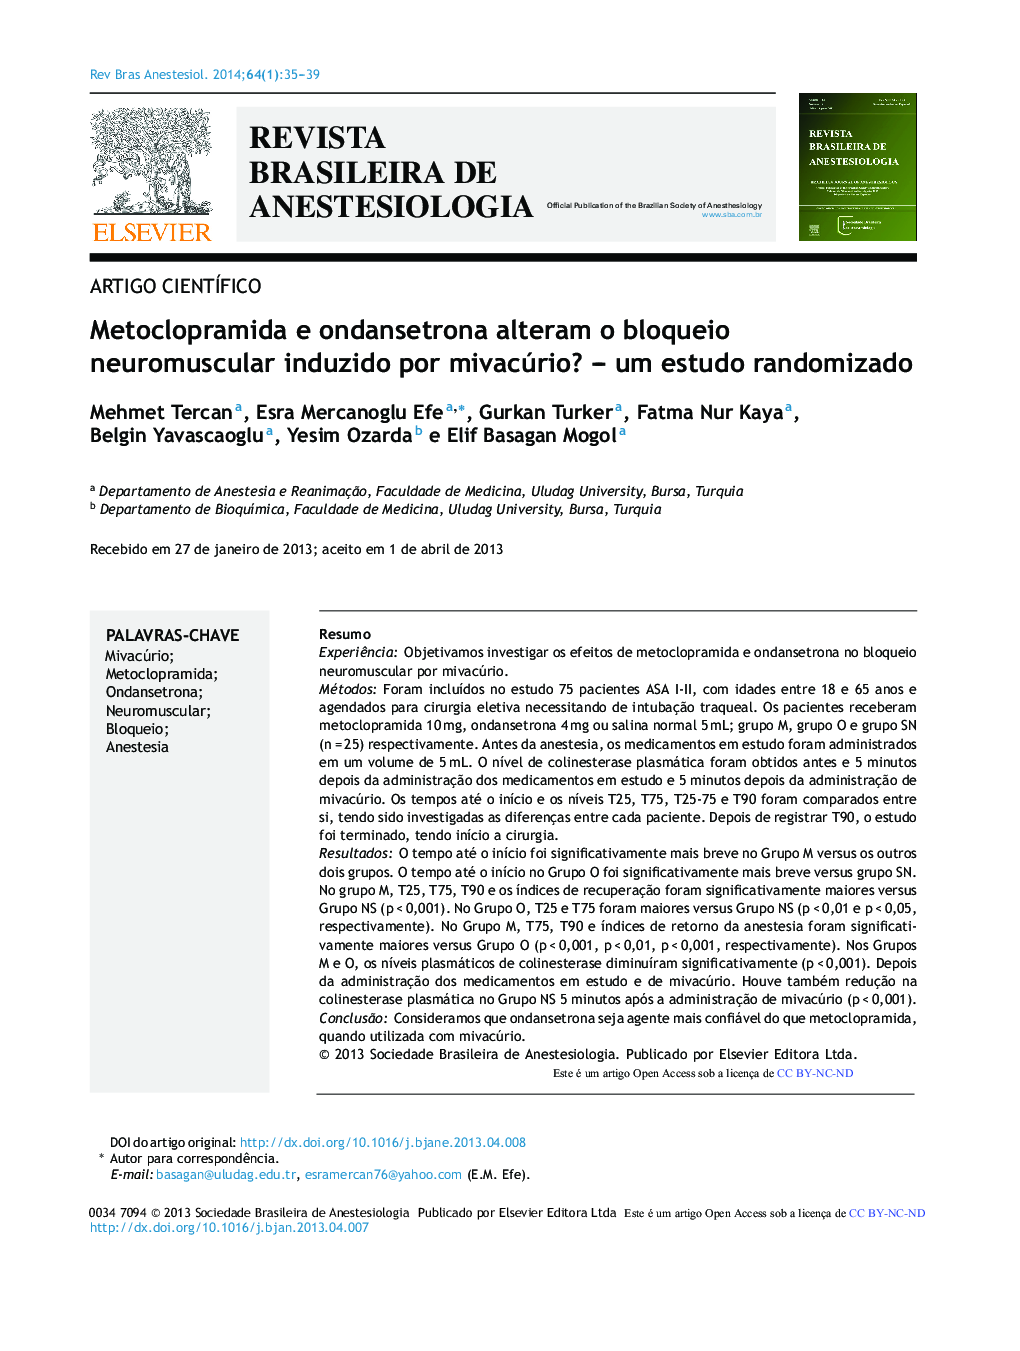 Metoclopramida e ondansetrona alteram o bloqueio neuromuscular induzido por mivacúrio? – um estudo randomizado